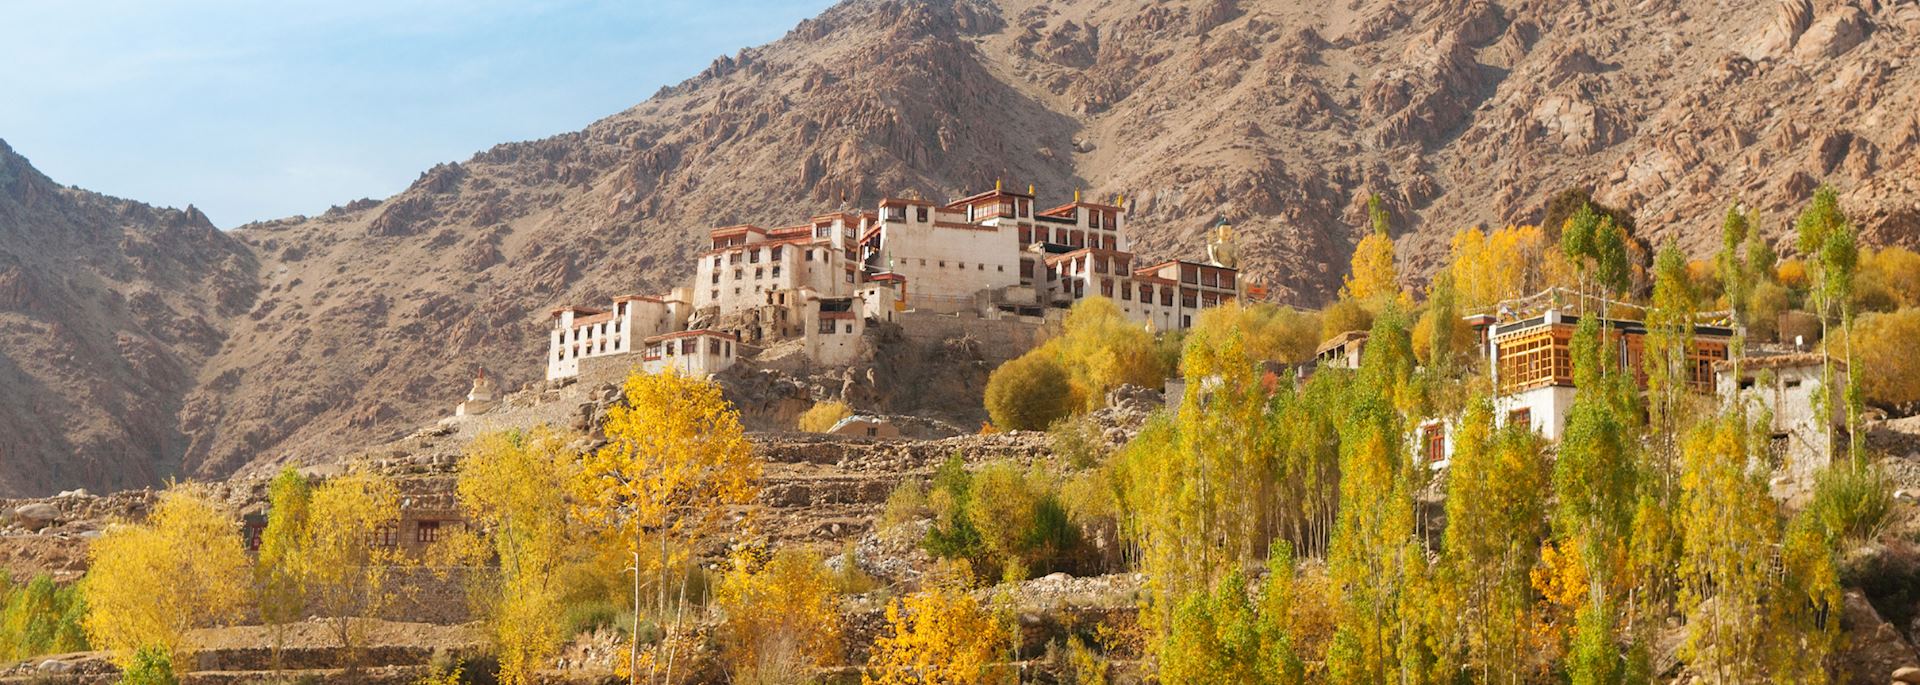 Alchi Monastery, Ladakh